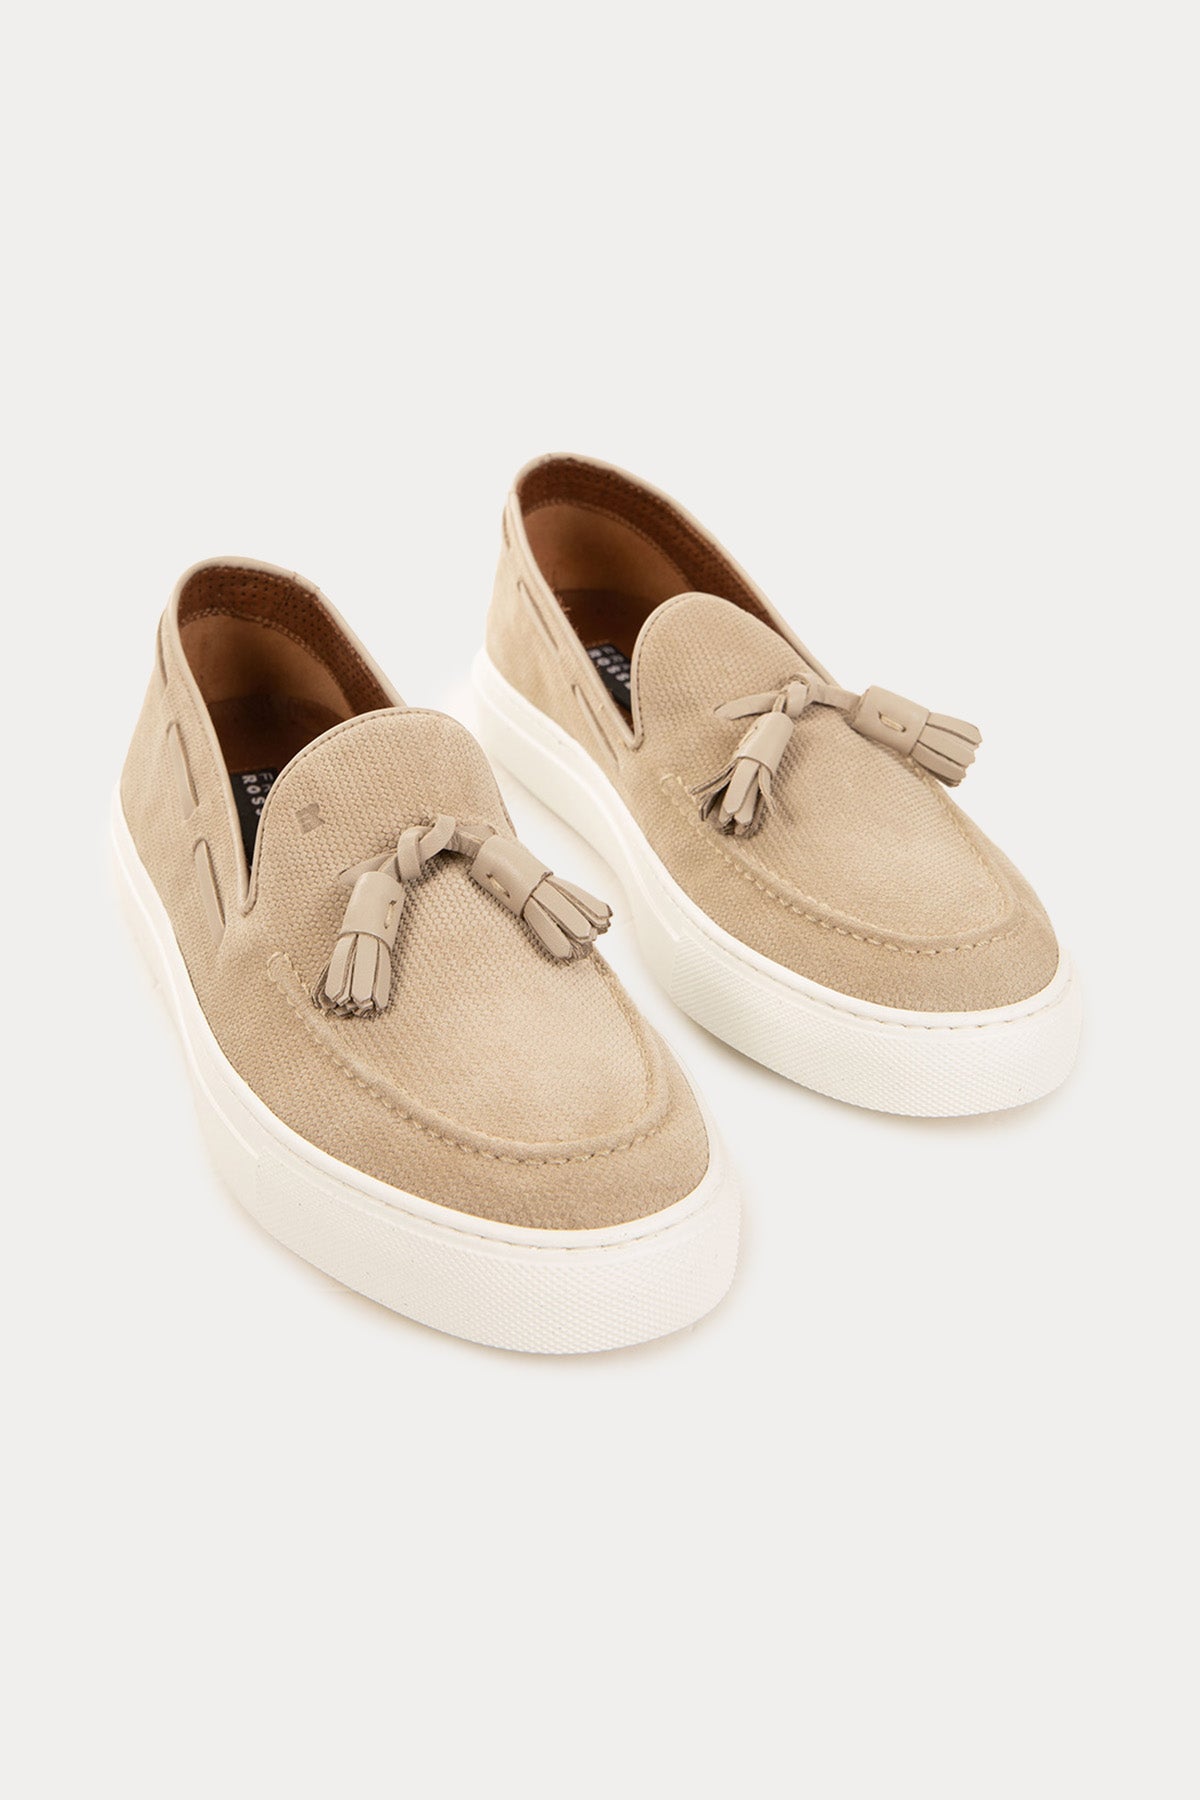 Fratelli Rossetti Örgü Deri Püsküllü Loafer Ayakkabı-Libas Trendy Fashion Store